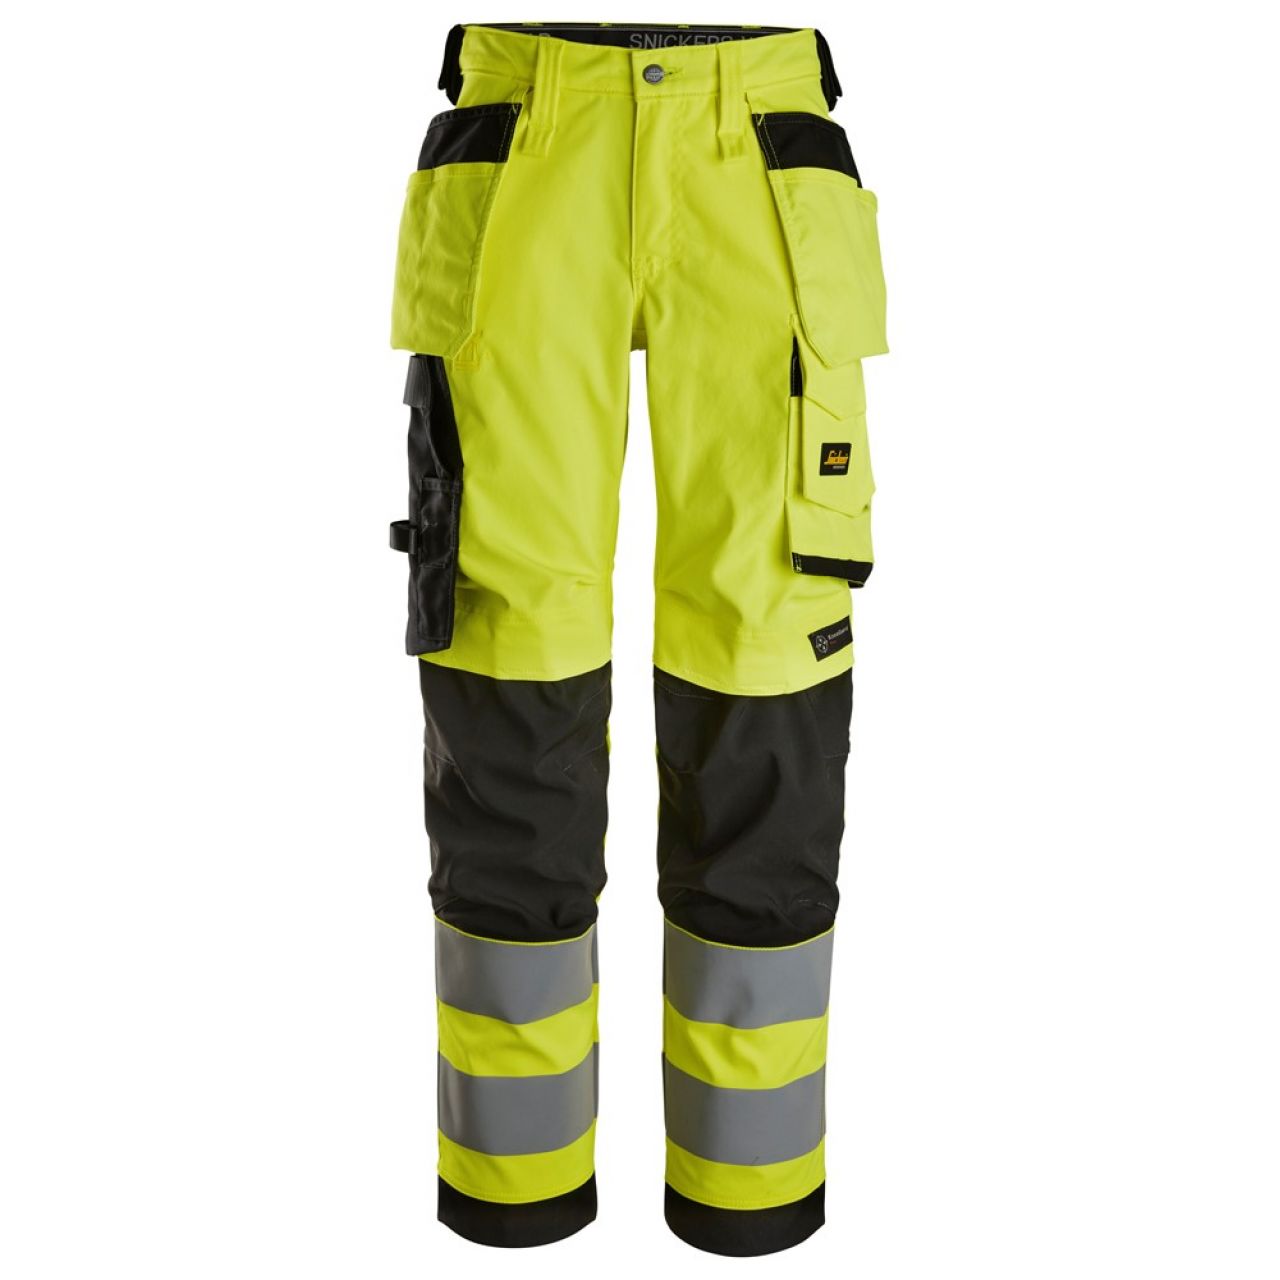 6743 Pantalones largos de trabajo elásticos de alta visibilidad clase 2 para mujer con bolsillos flotantes amarillo-negro talla 36